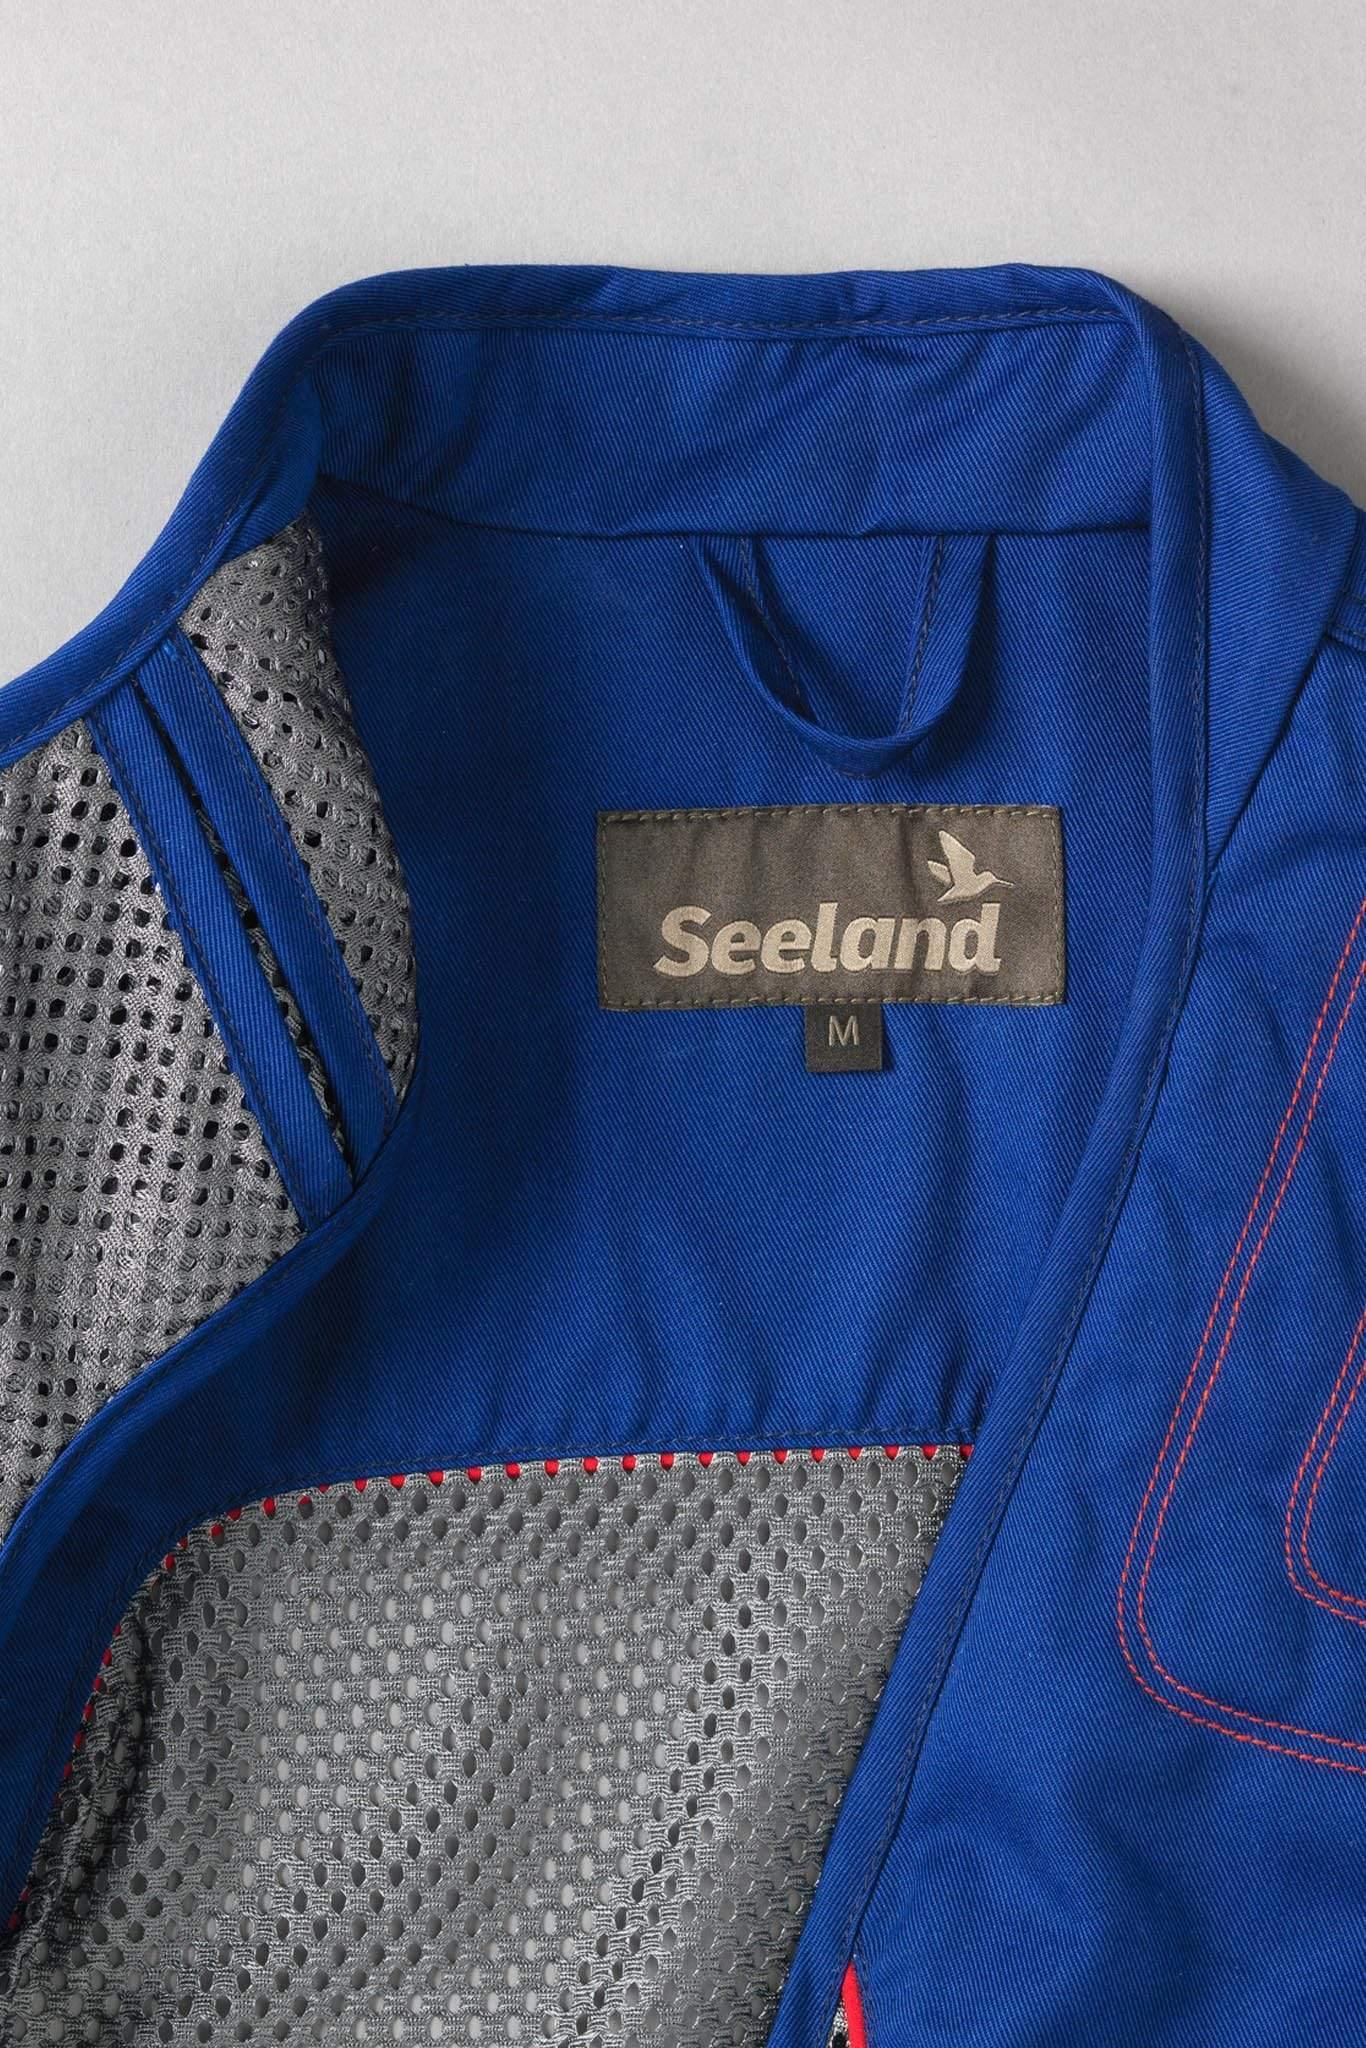 Seeland Technical Shooting Vests Seeland Skeet II Lady Waistcoat Clay Vest Sodalite Blue